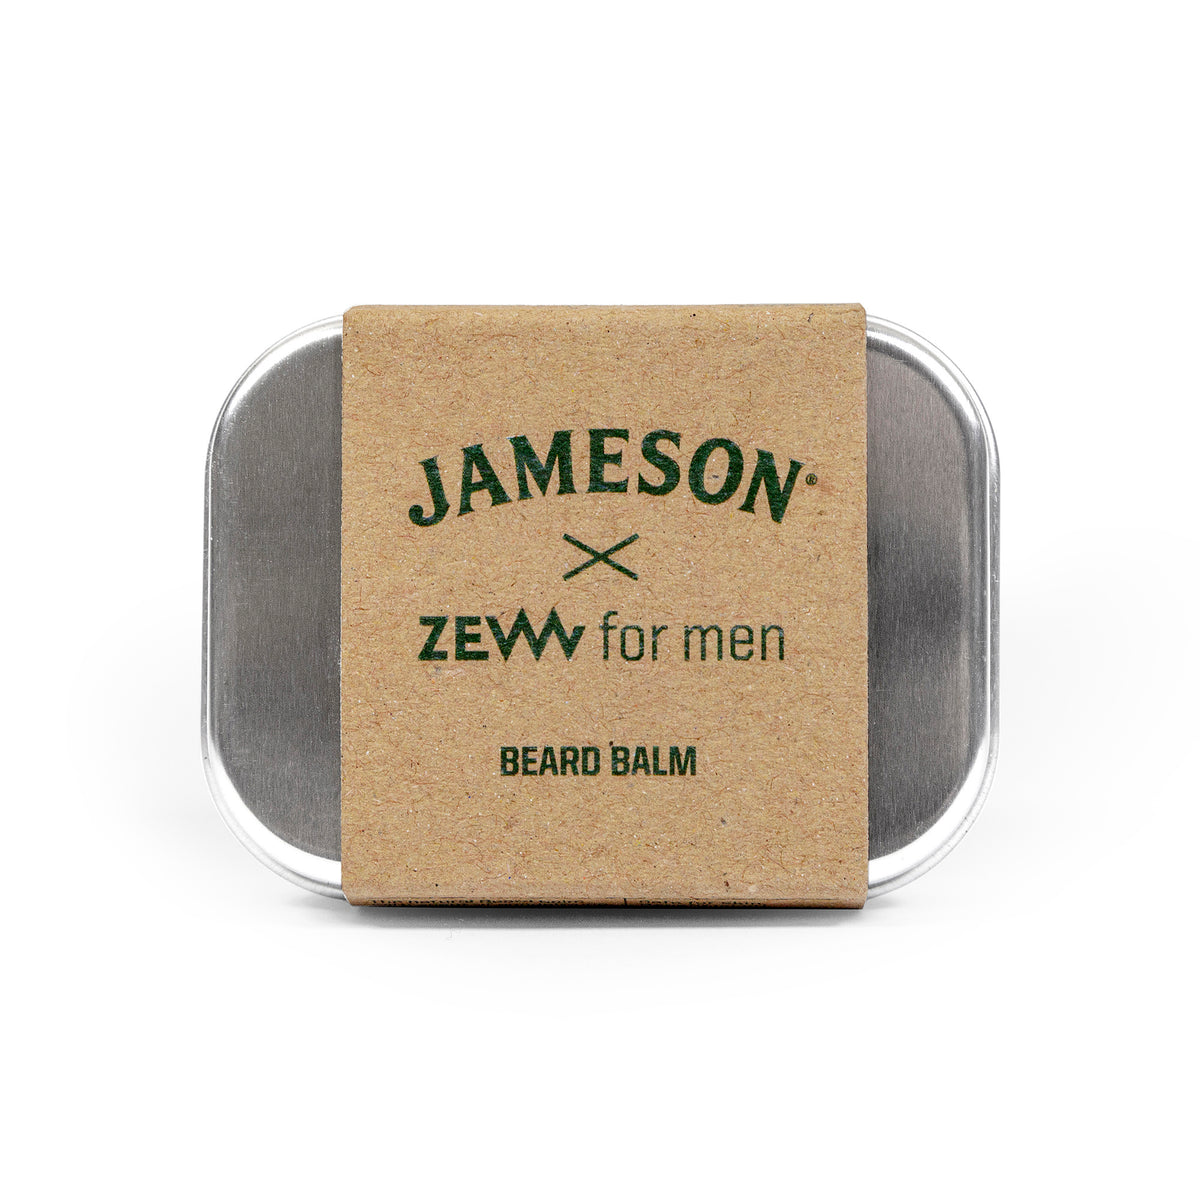 ZEW for men - Jameson Beard Balm - Jameson Skeggbalm